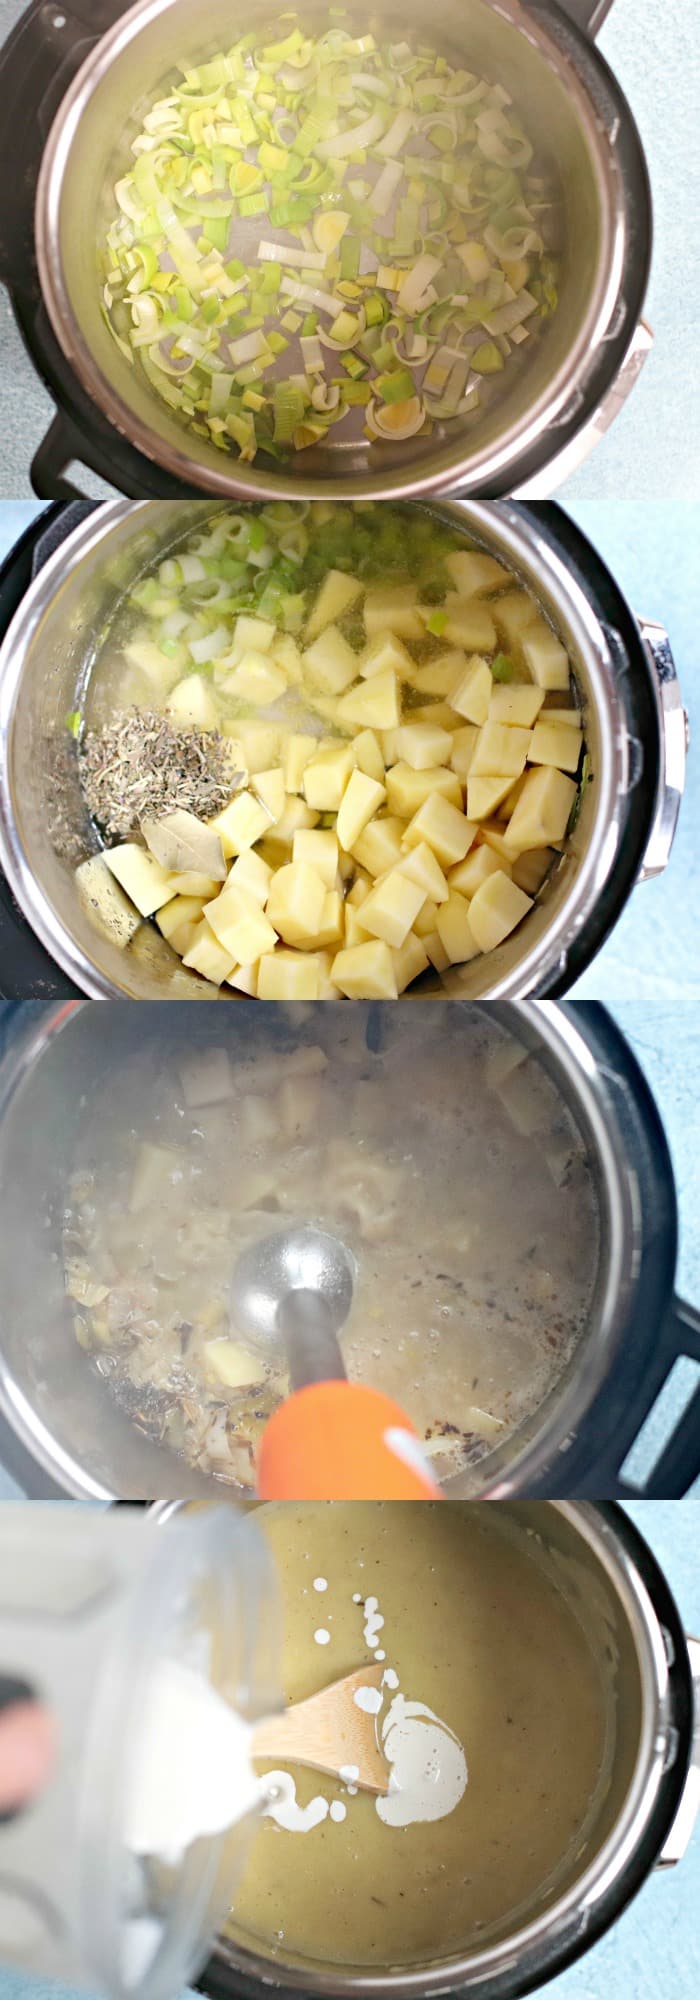 Fotos de proceso paso a paso para hacer sopa vegana de puerros y papas al instante